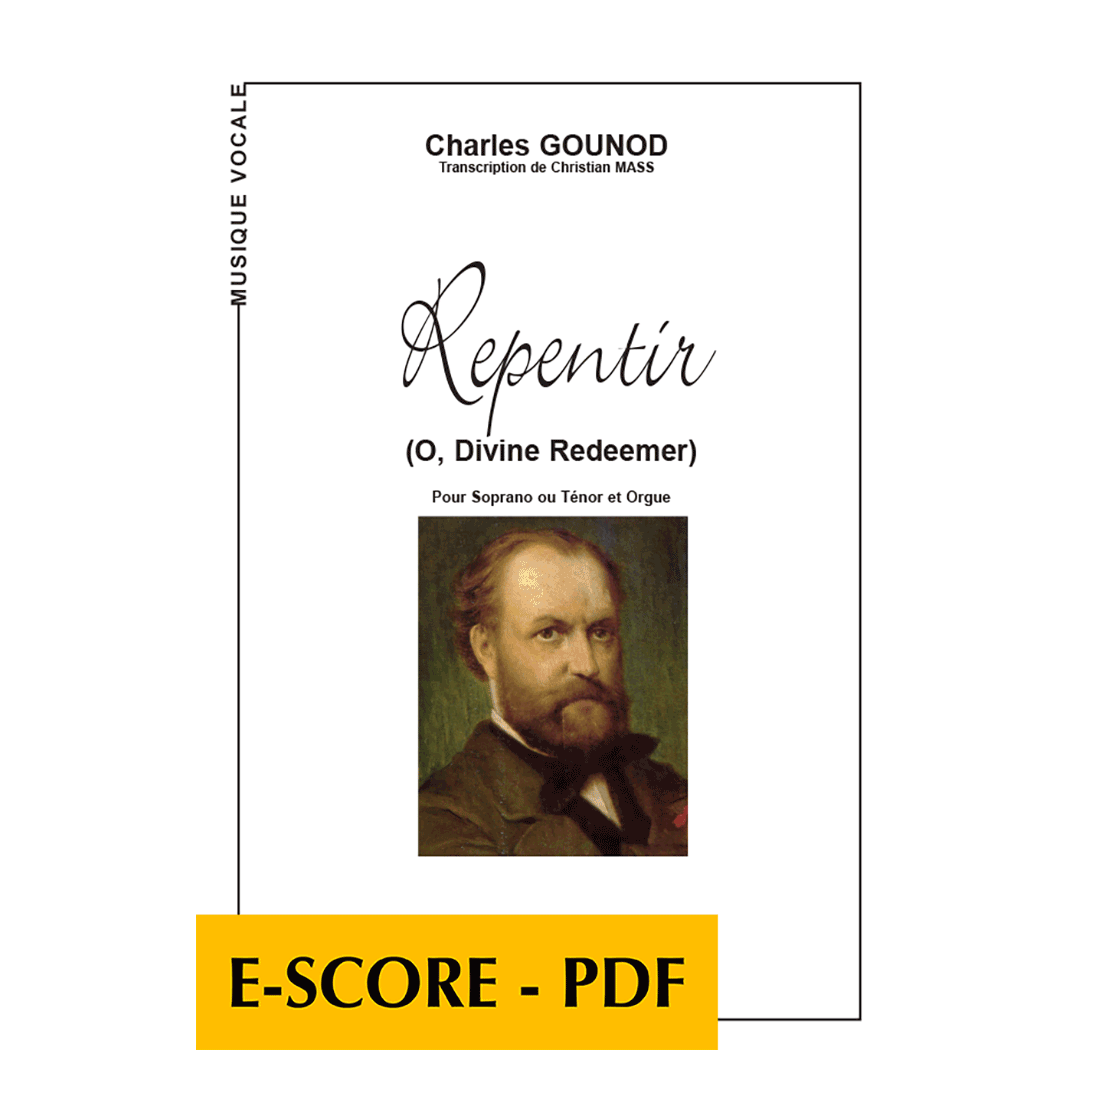 Repentir (O, Divine Redeemer) für Sopran oder Tenor und Orgel - E-score PDF